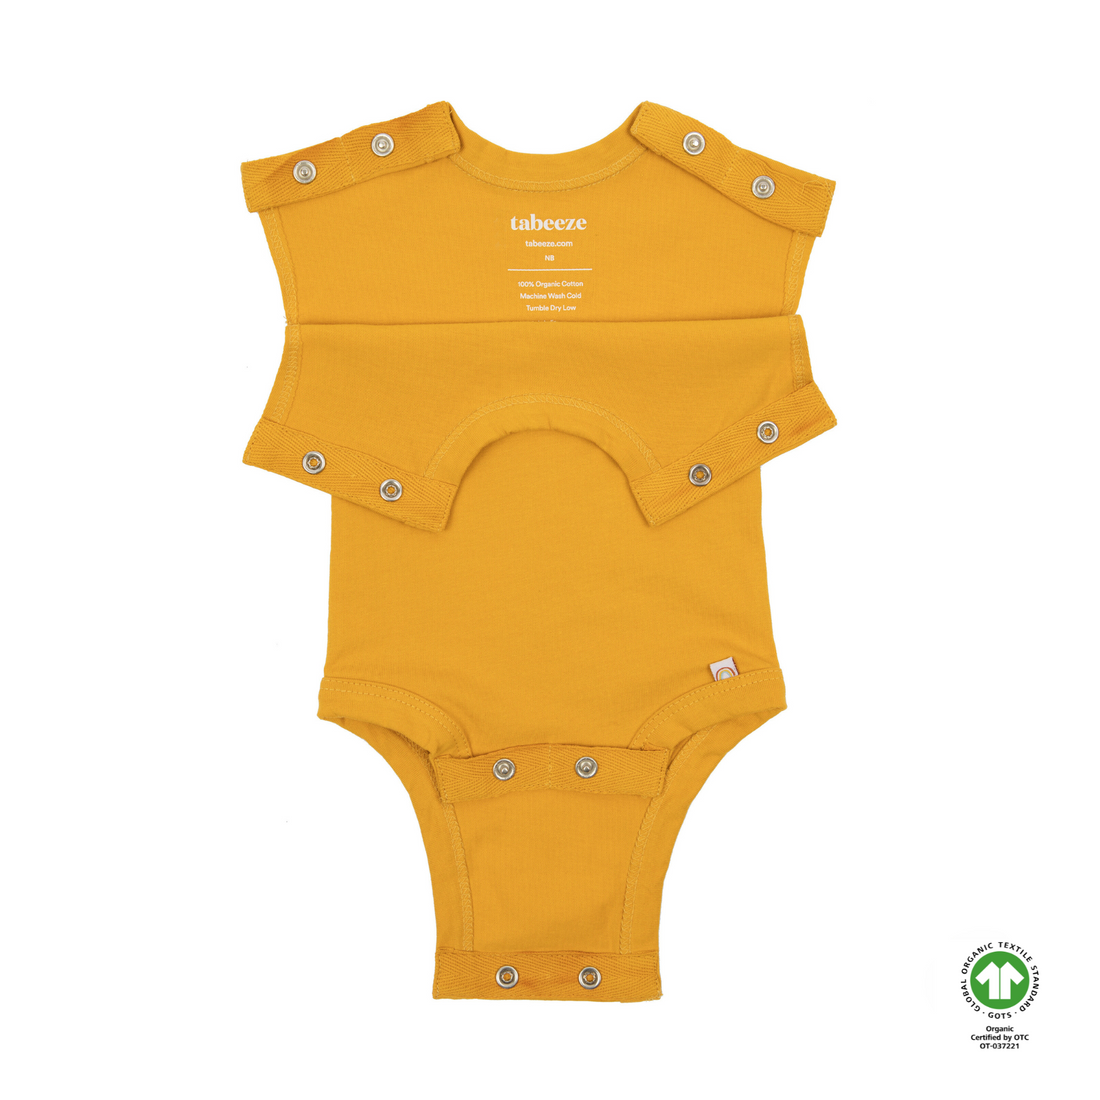 Unique bodysuits for infants. Providing a better grip.